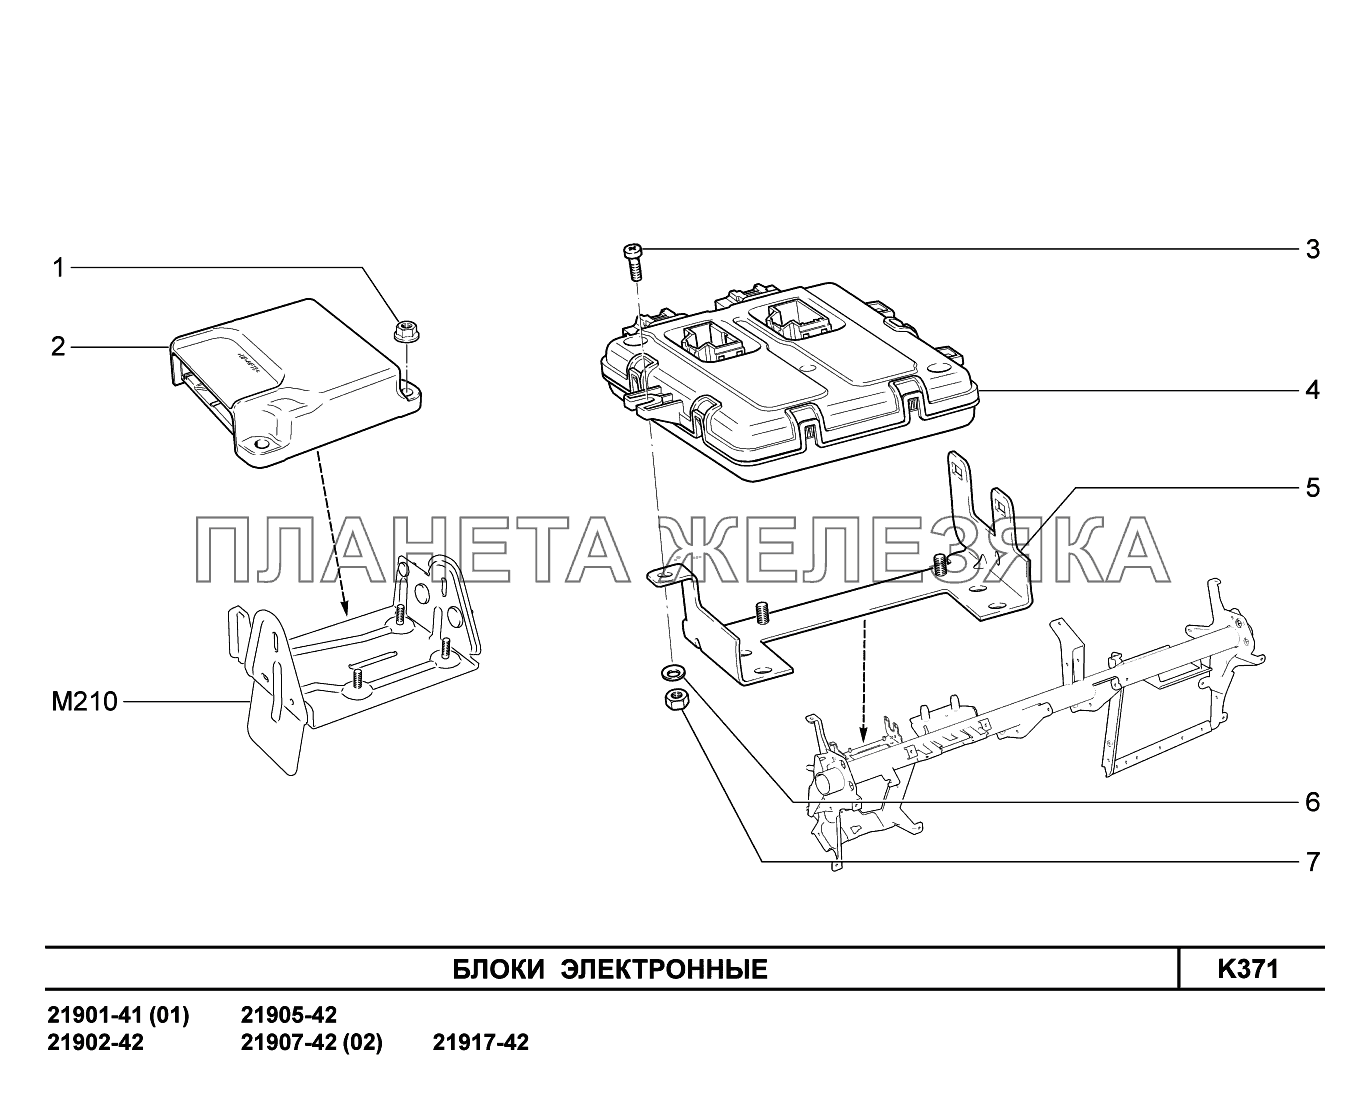 K371. Блоки электронные Lada Granta-2190